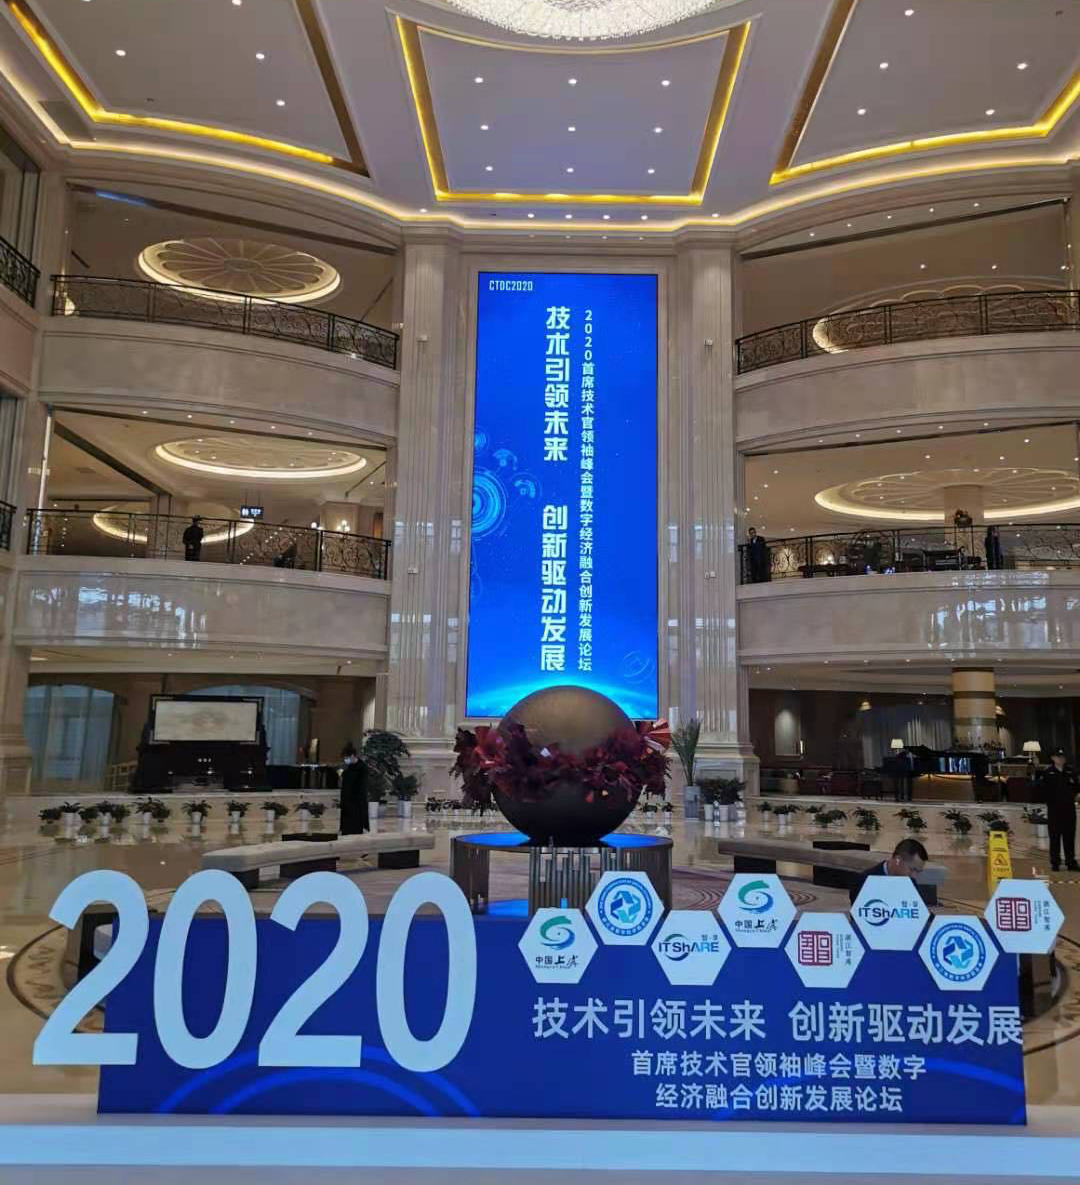 技术引领未来 创新驱动发展  ——2020CTDC首席技术官领袖峰会暨数字经济融合创新发展论坛成功举